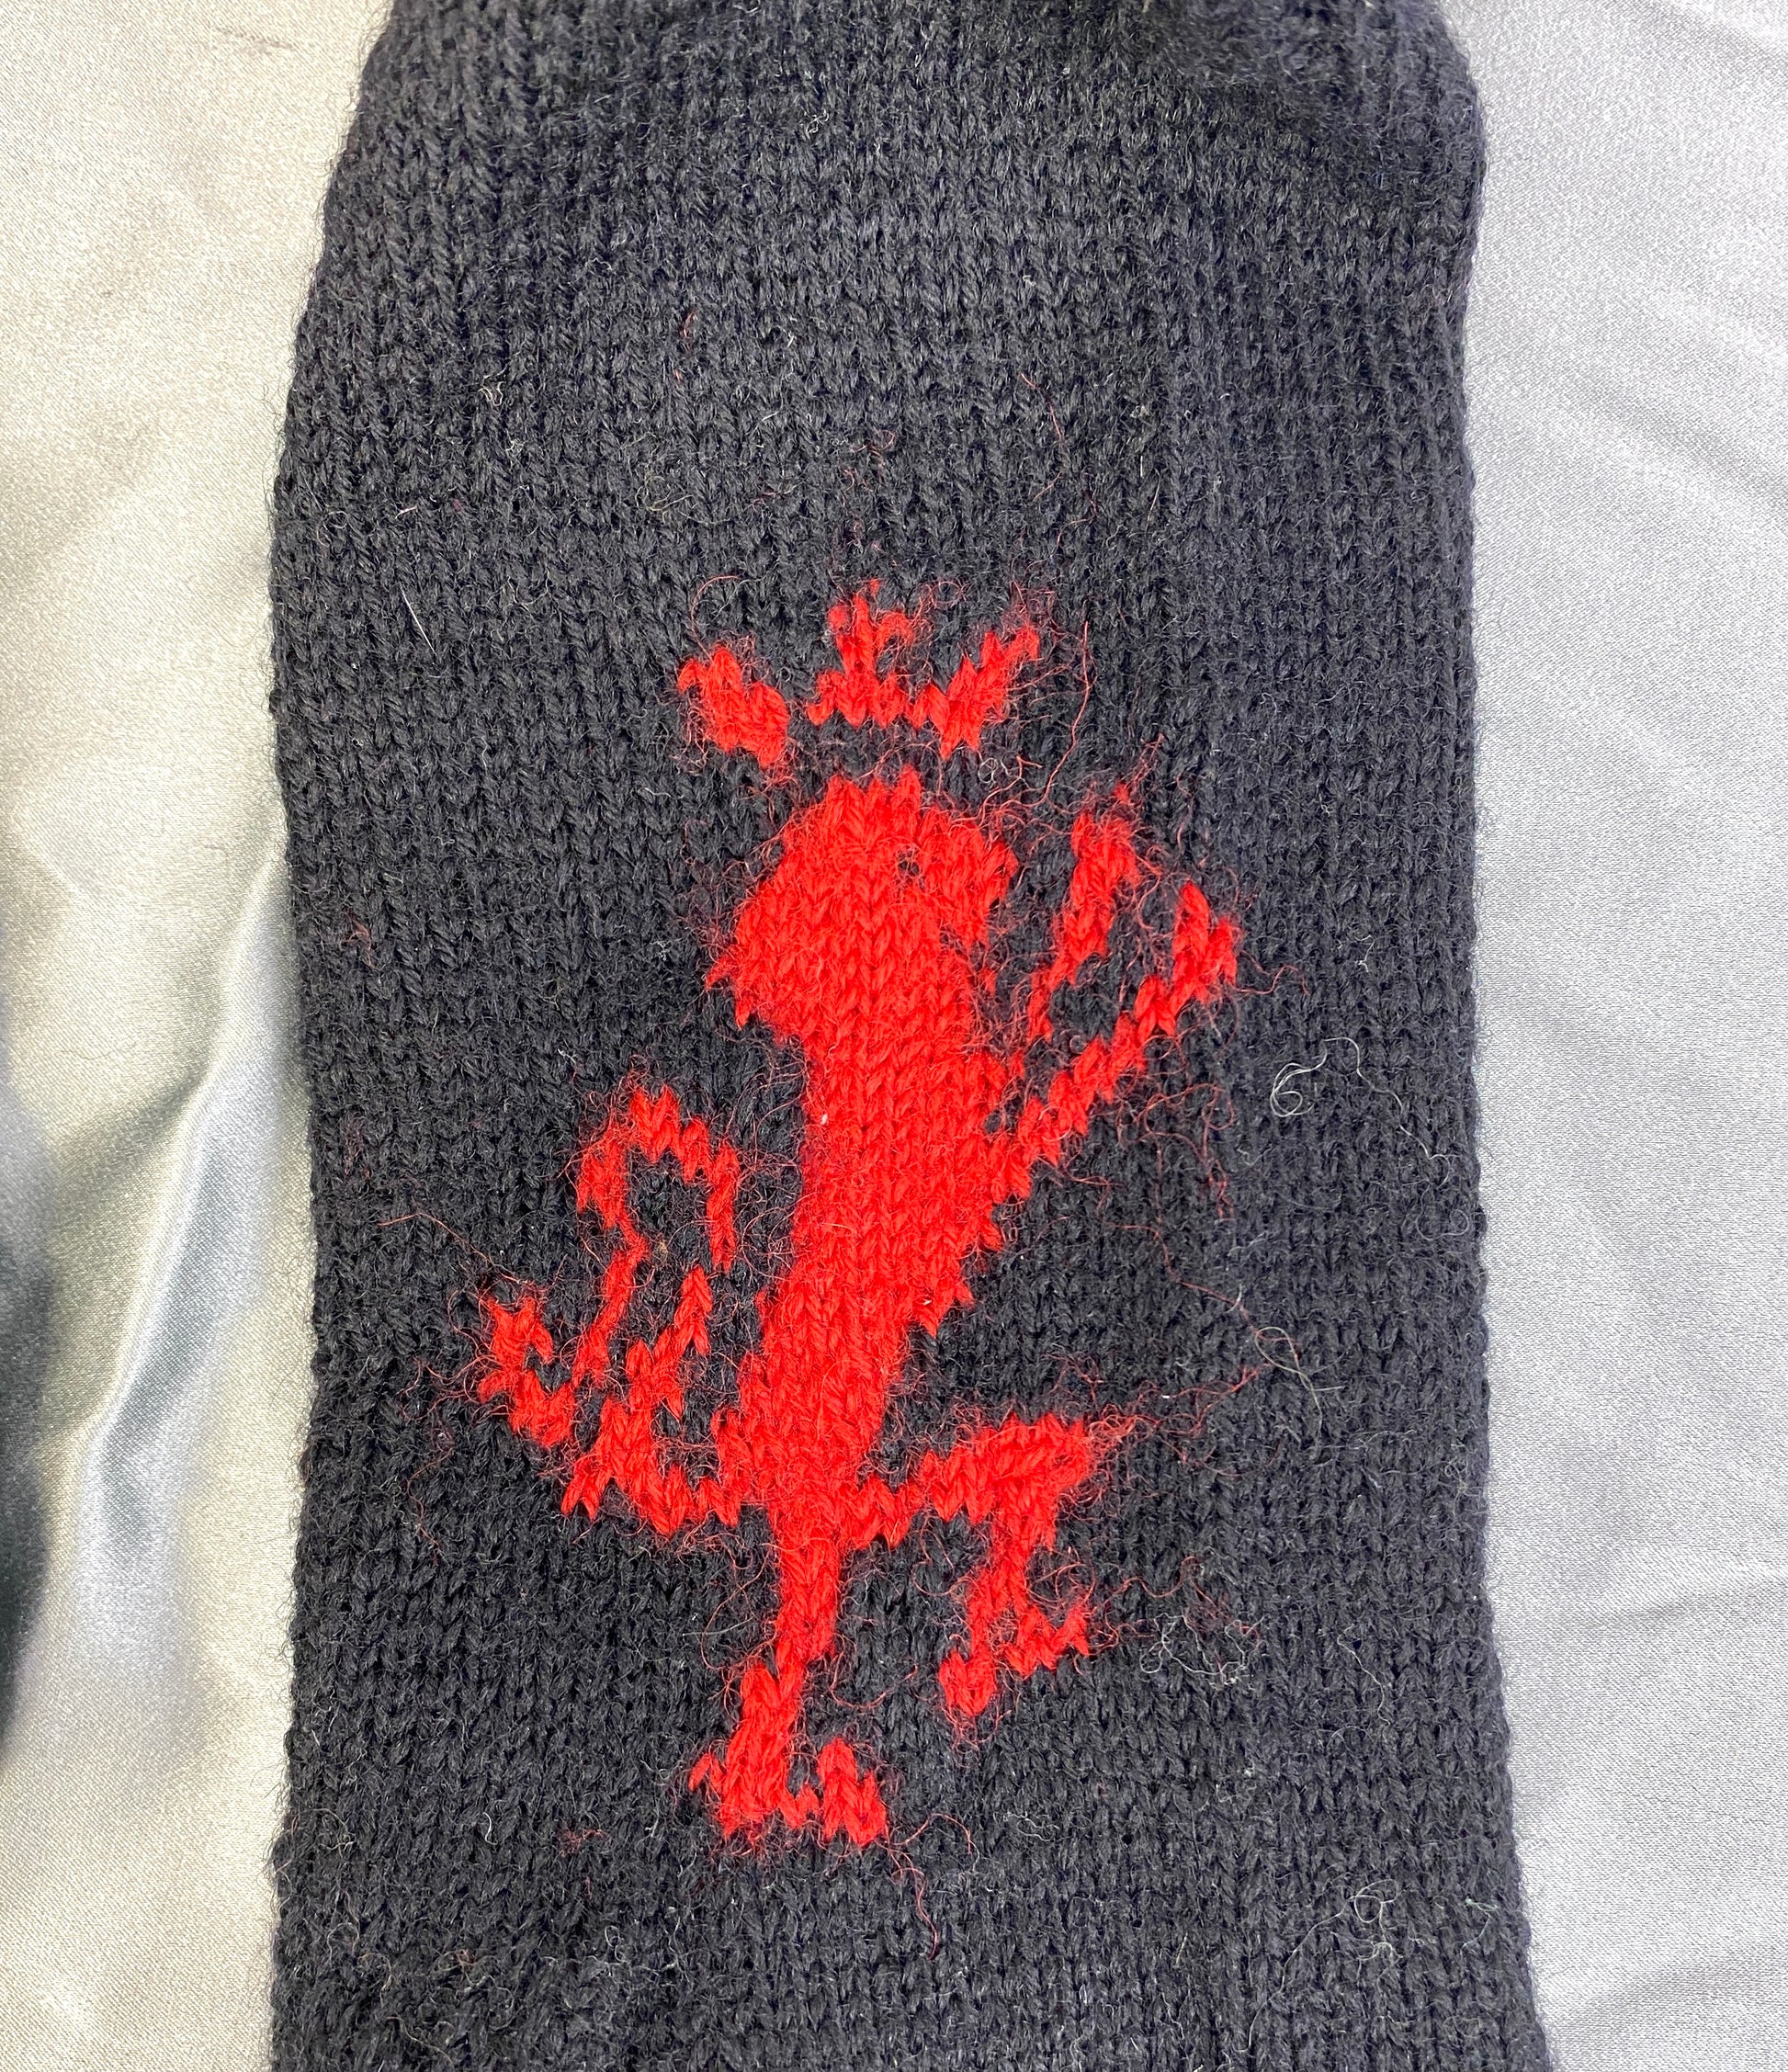 Vintage Deadstock Red Heraldic Lion Rampant Black Wool Socks, x1 Pair 